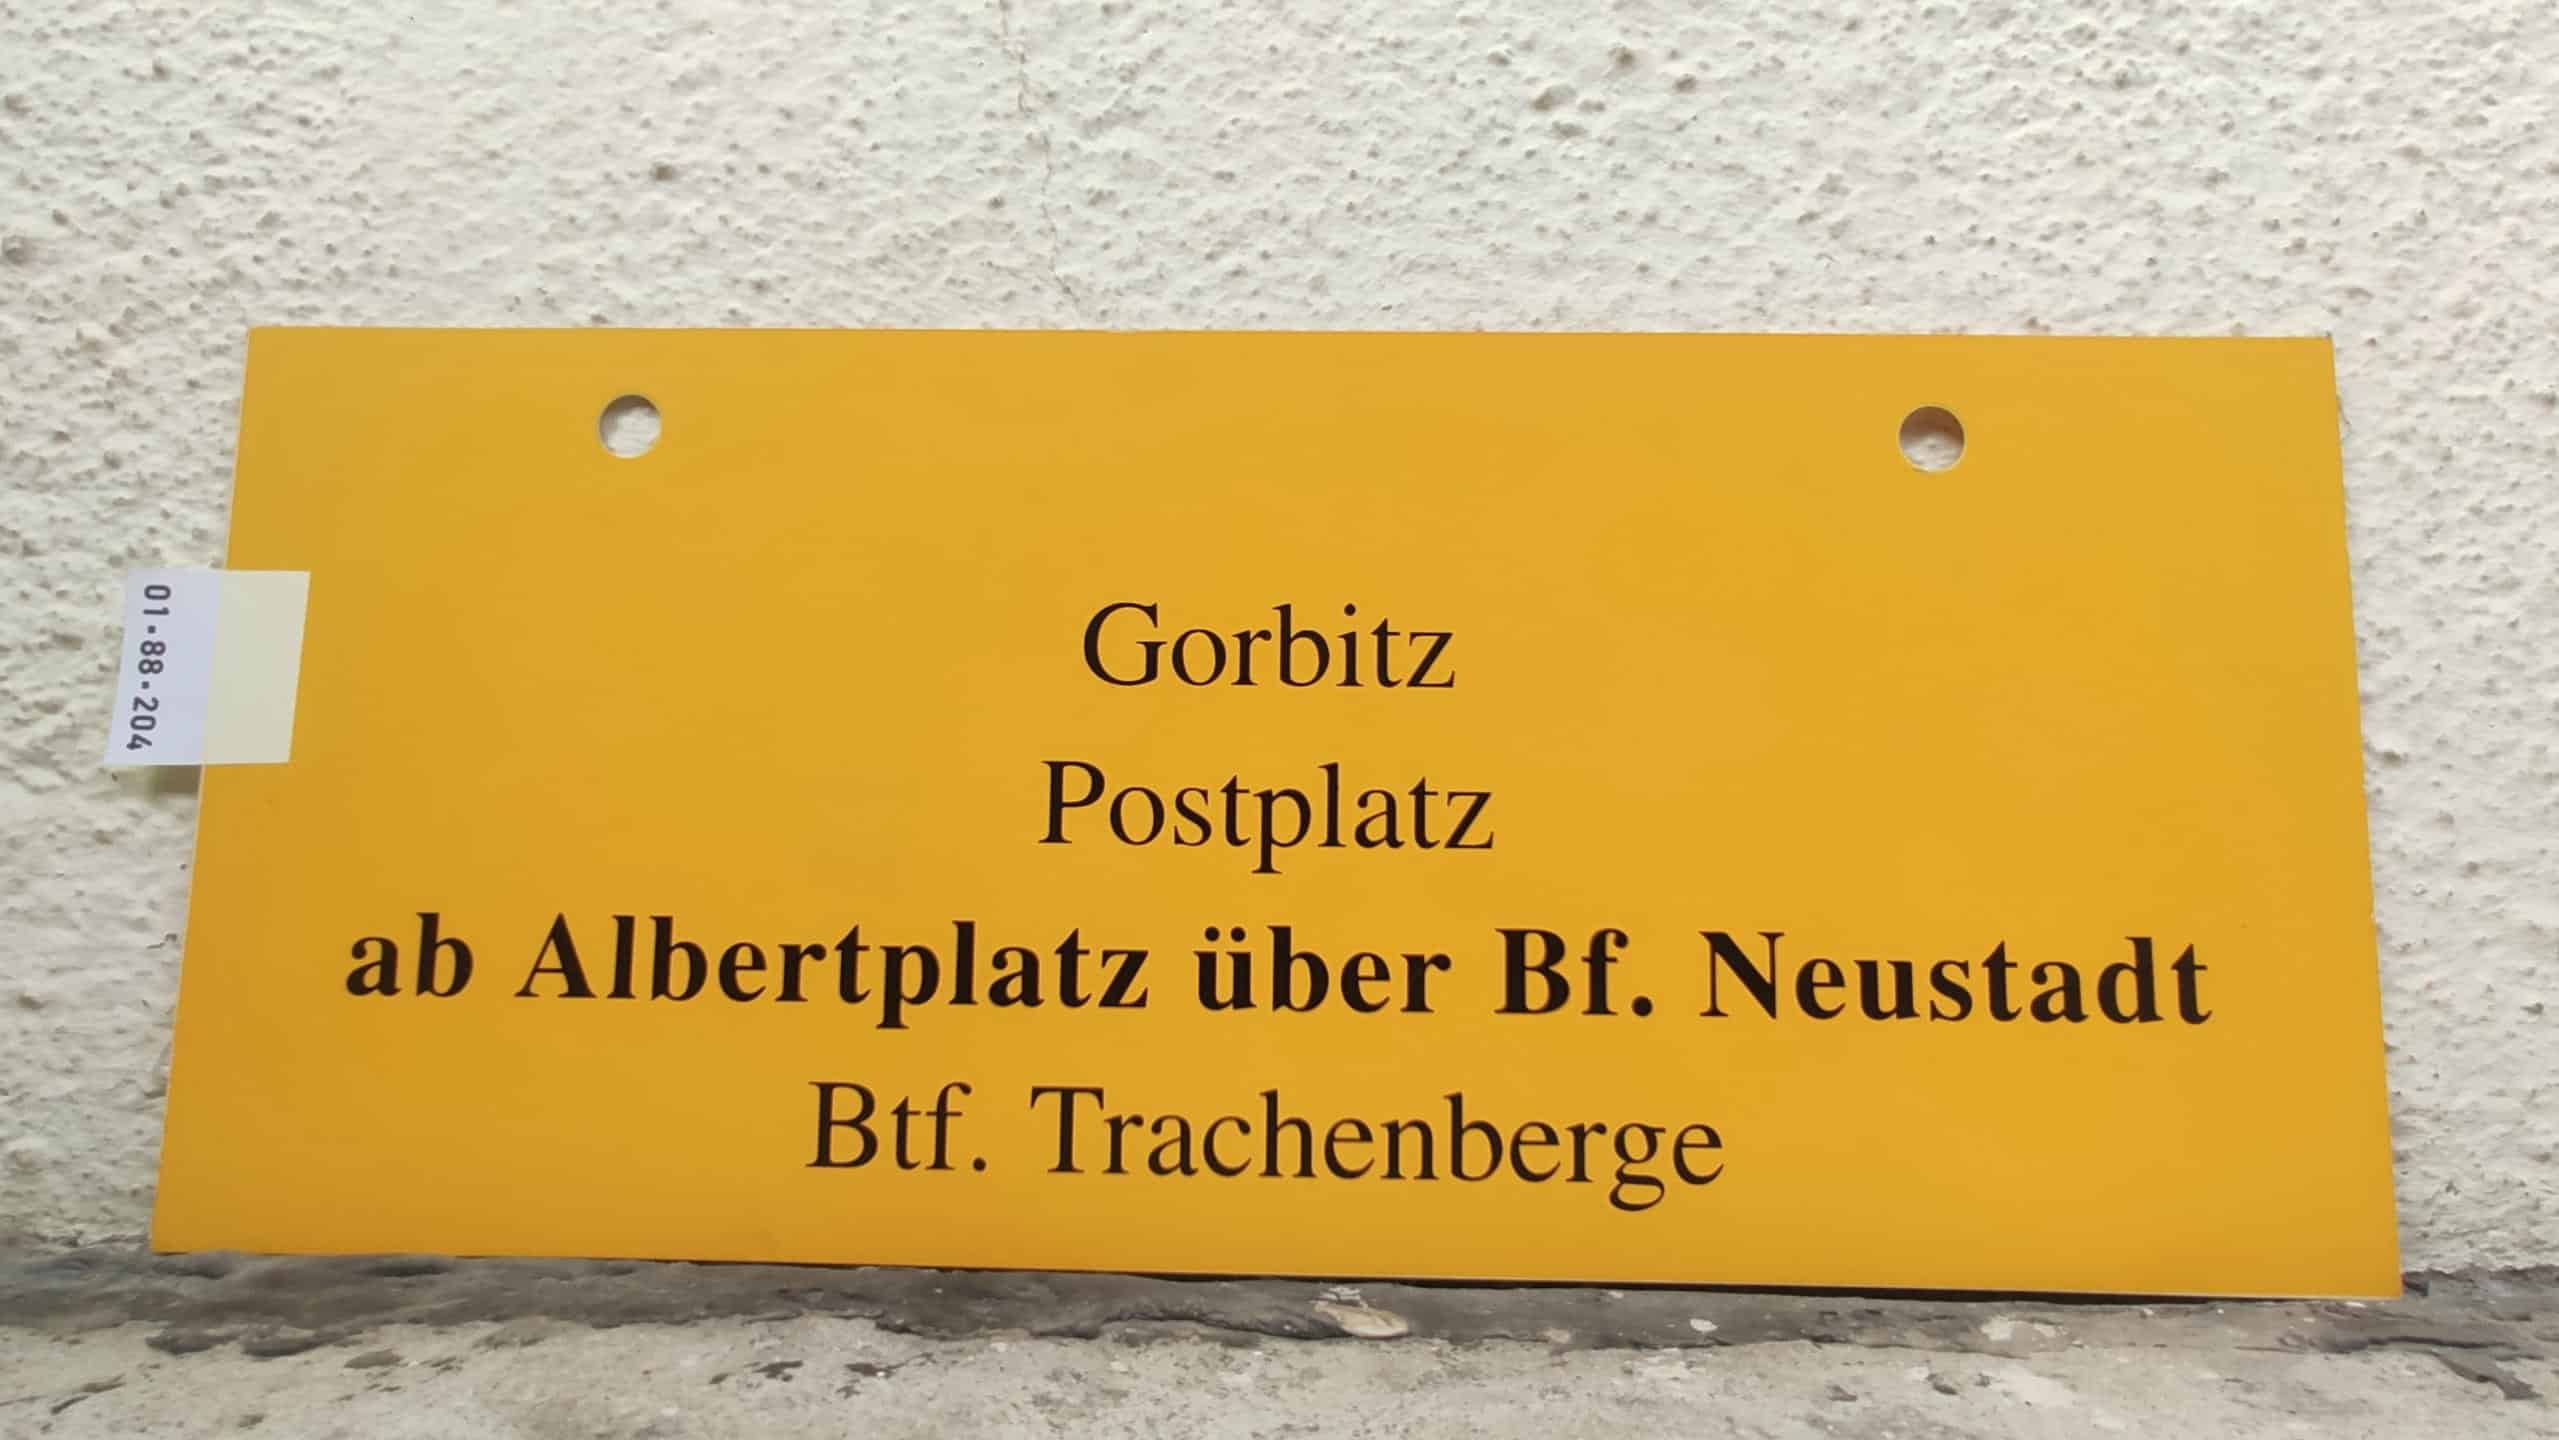 Gorbitz Postplatz ab Albertplatz über Bf. Neustadt Btf. Trachenberge